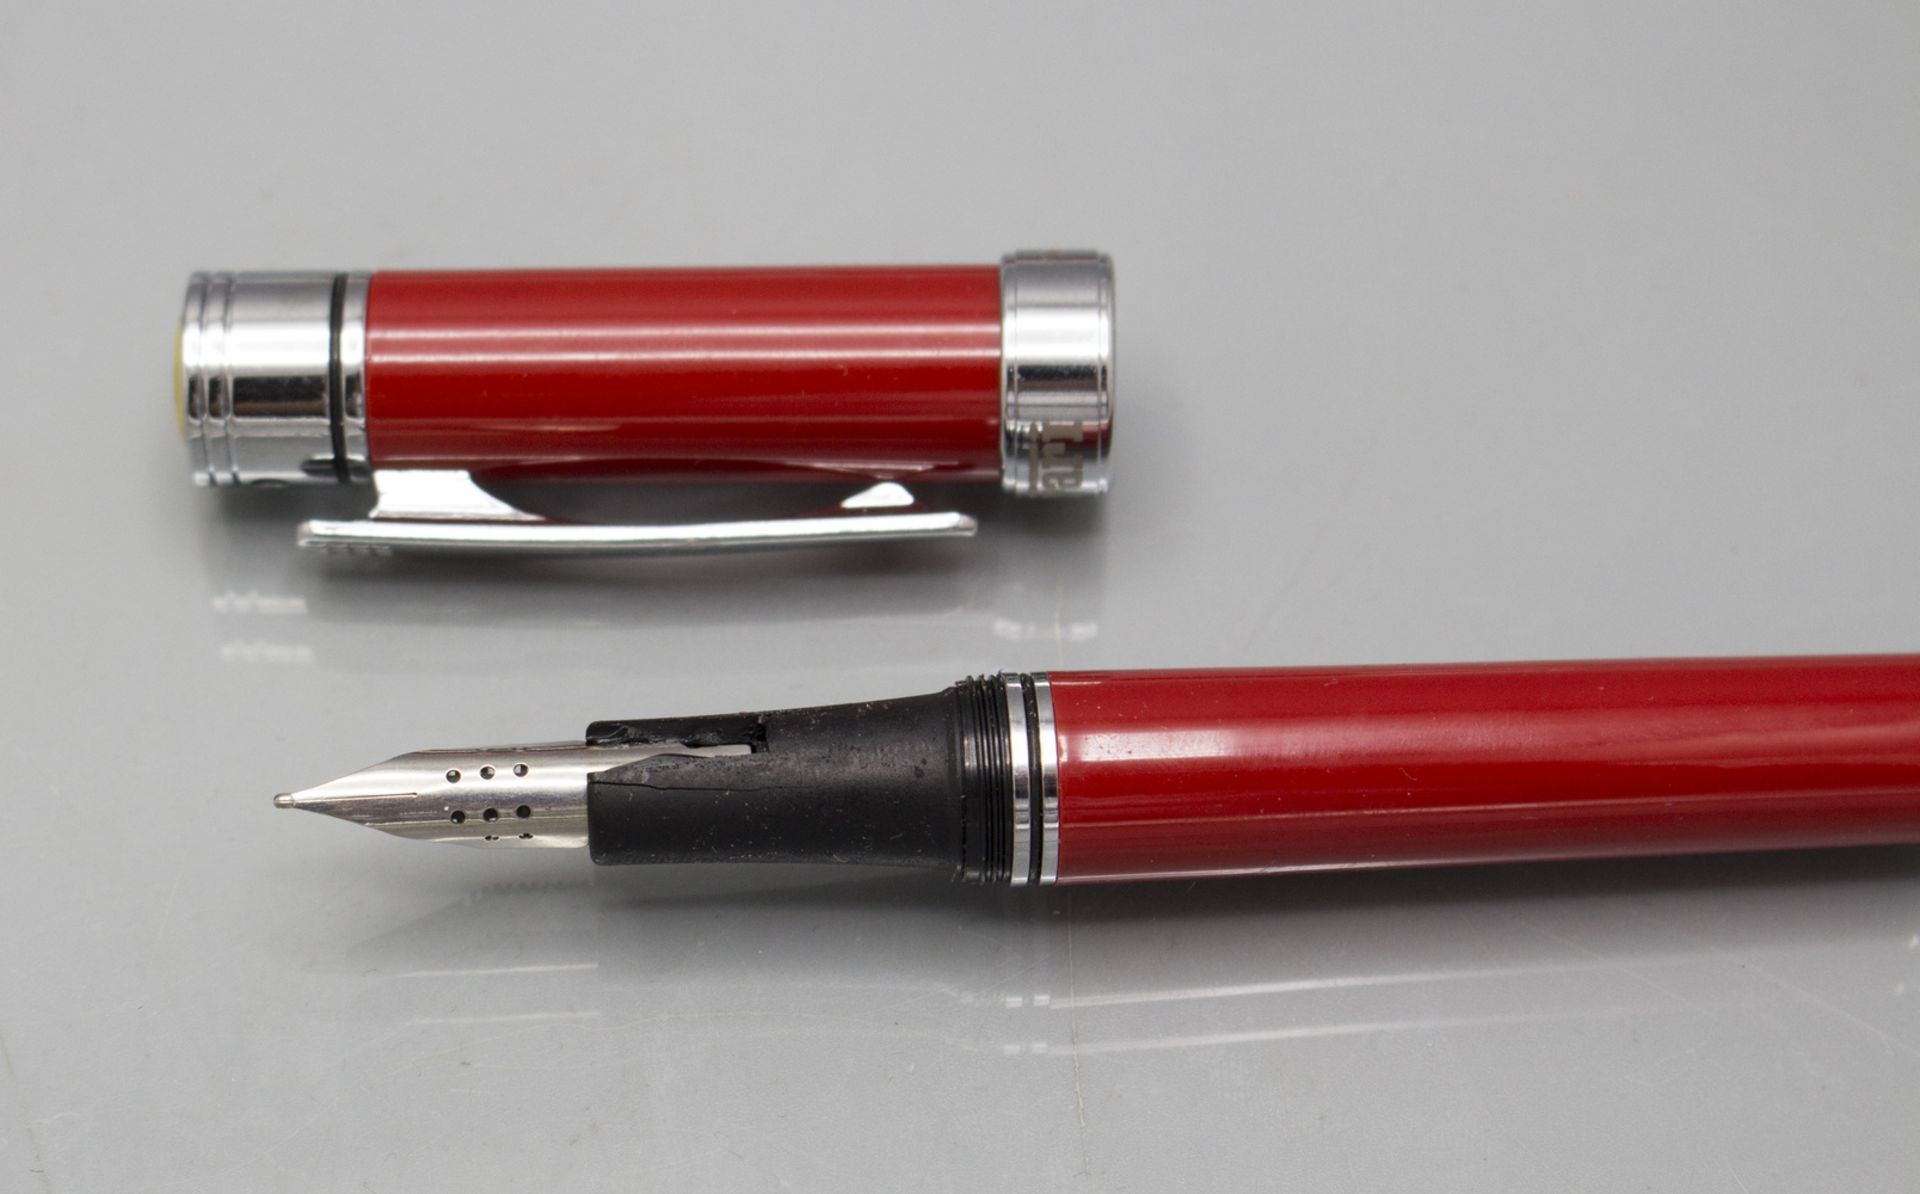 Ferrari Kugelschreiber und Füller / A Ferrari fountain pen and ballpoint pen - Image 3 of 4